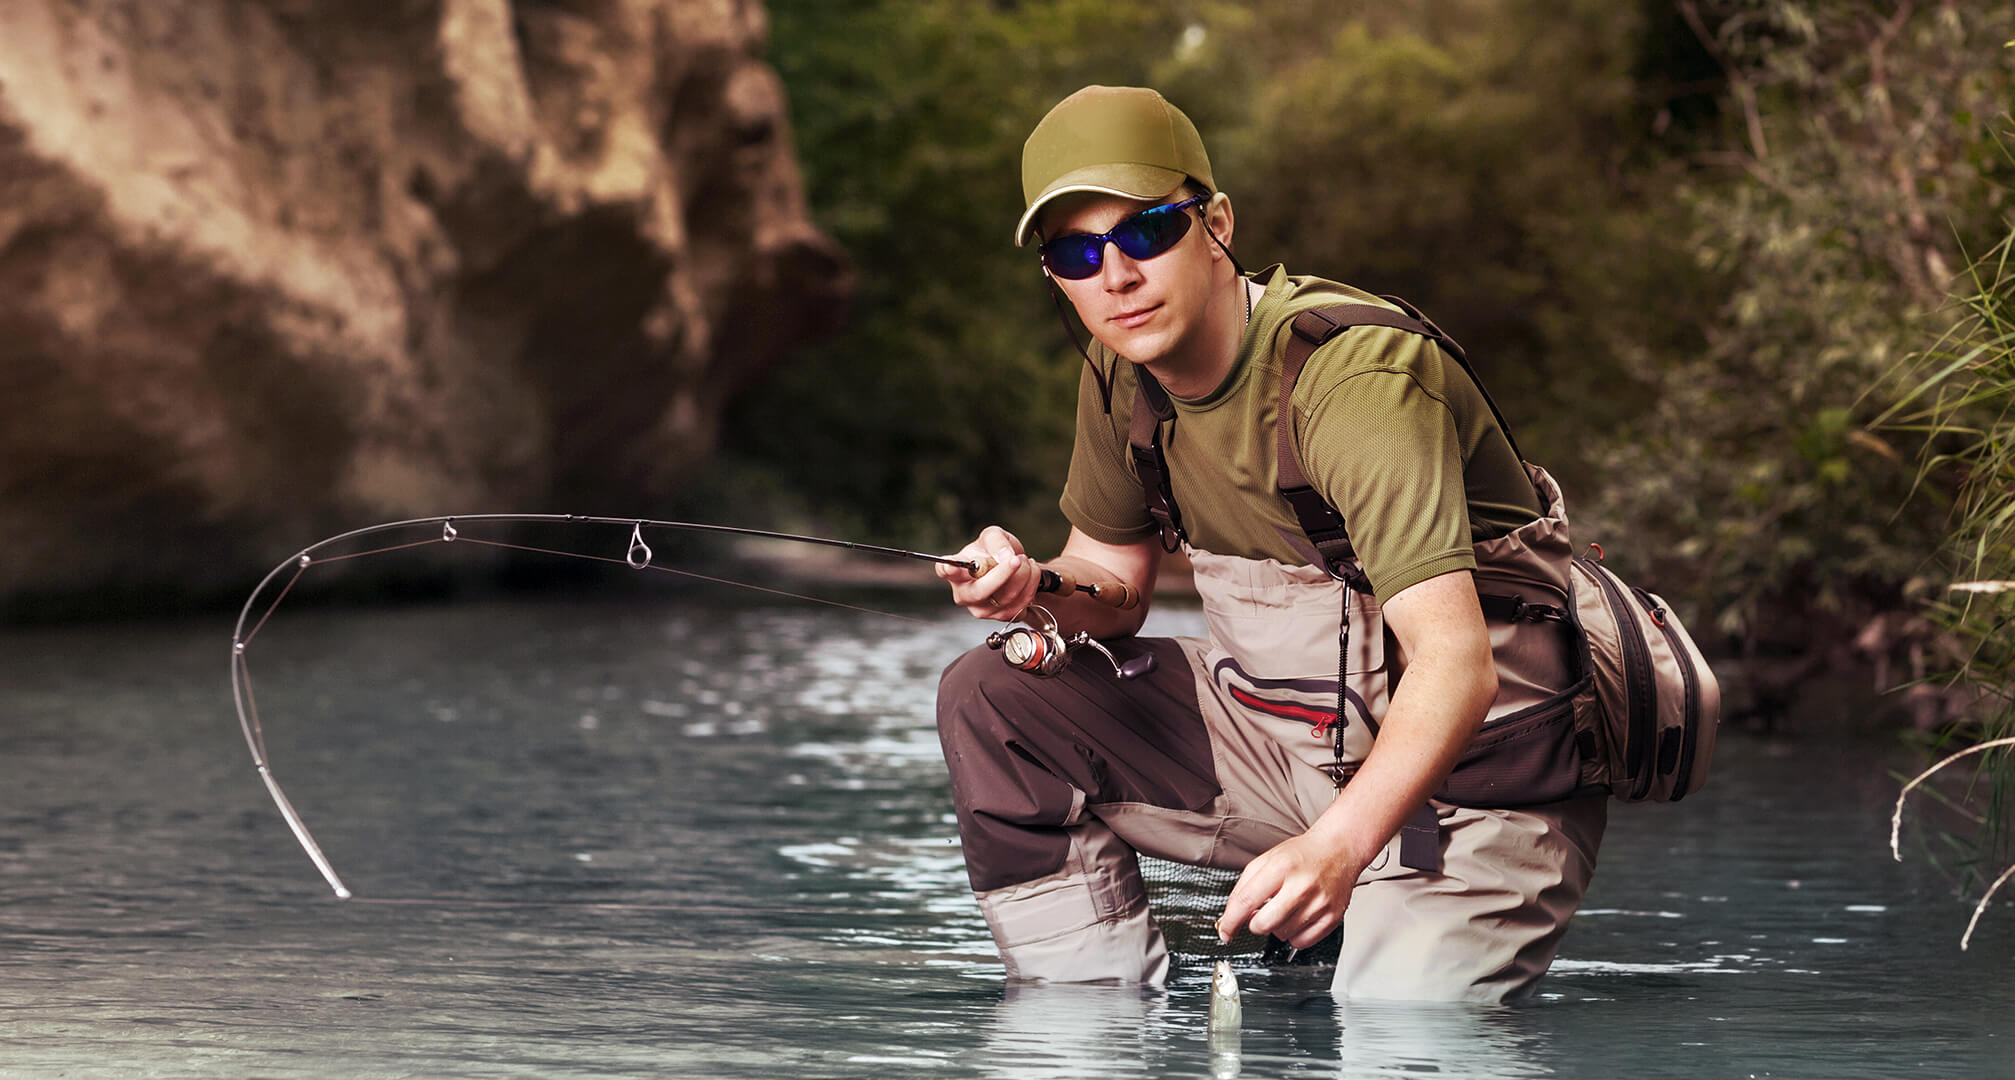 en fiskare på knä i vatten som bär solglasögon